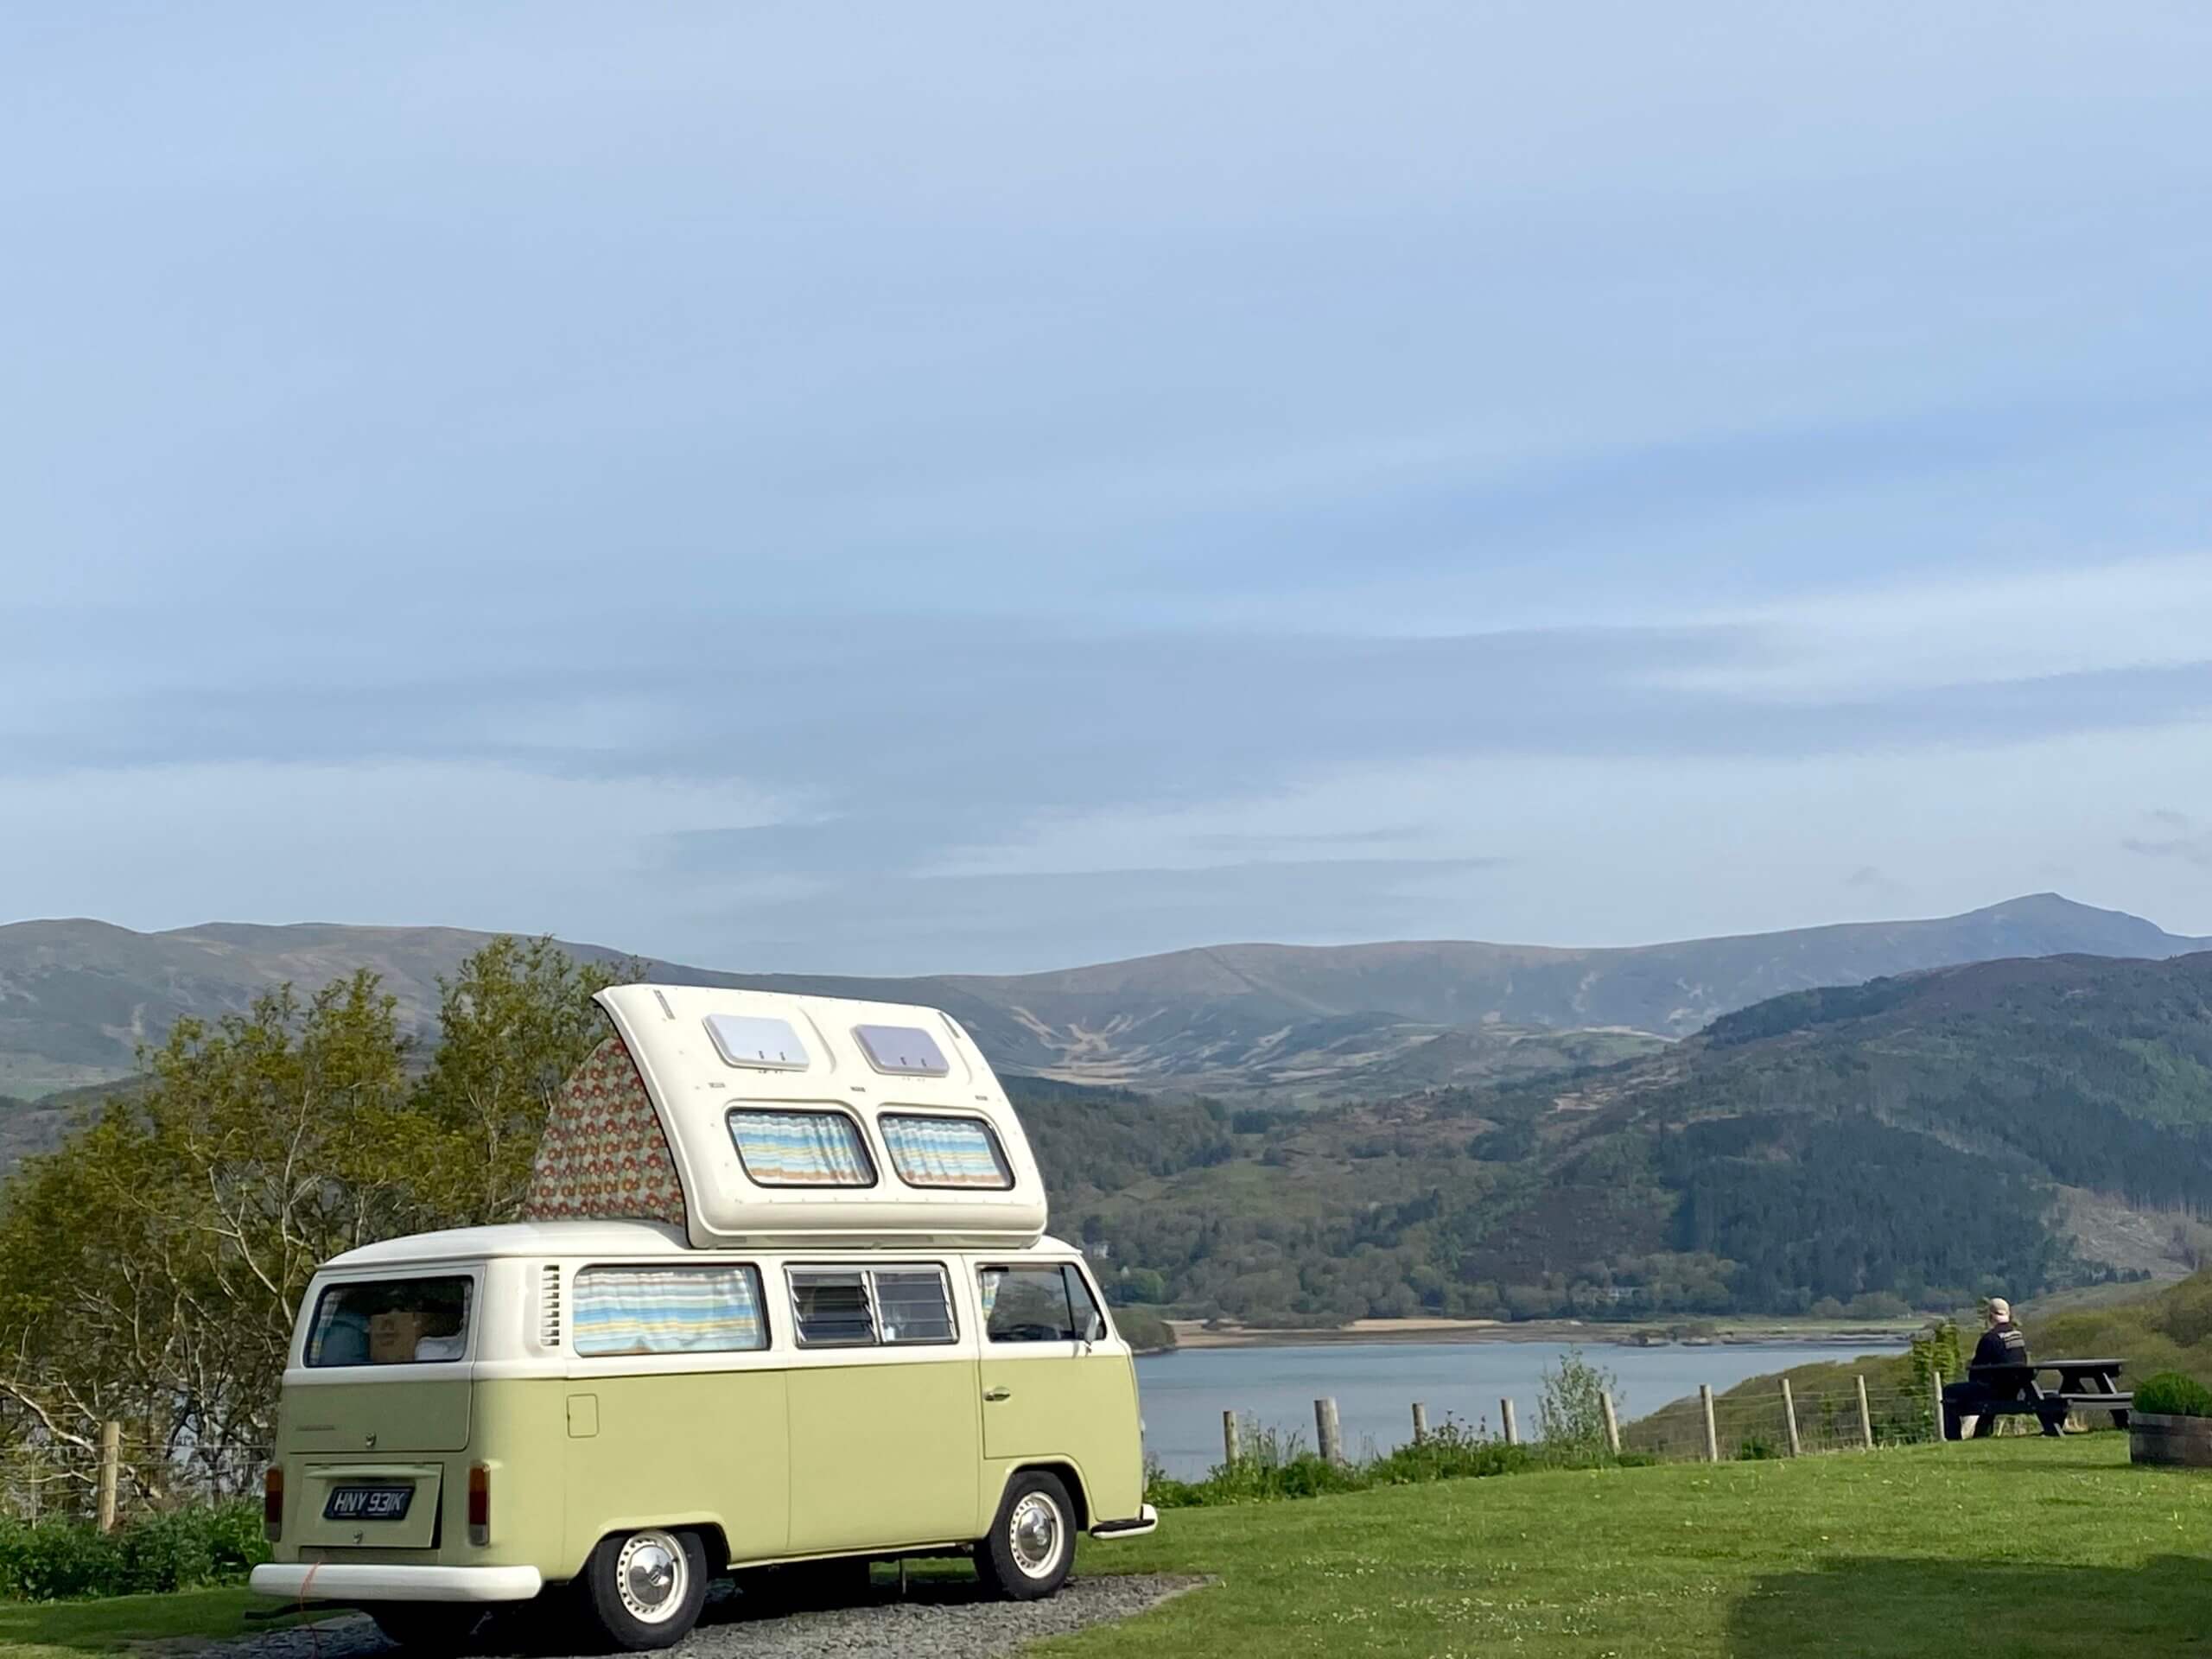 Snowdonia campsites